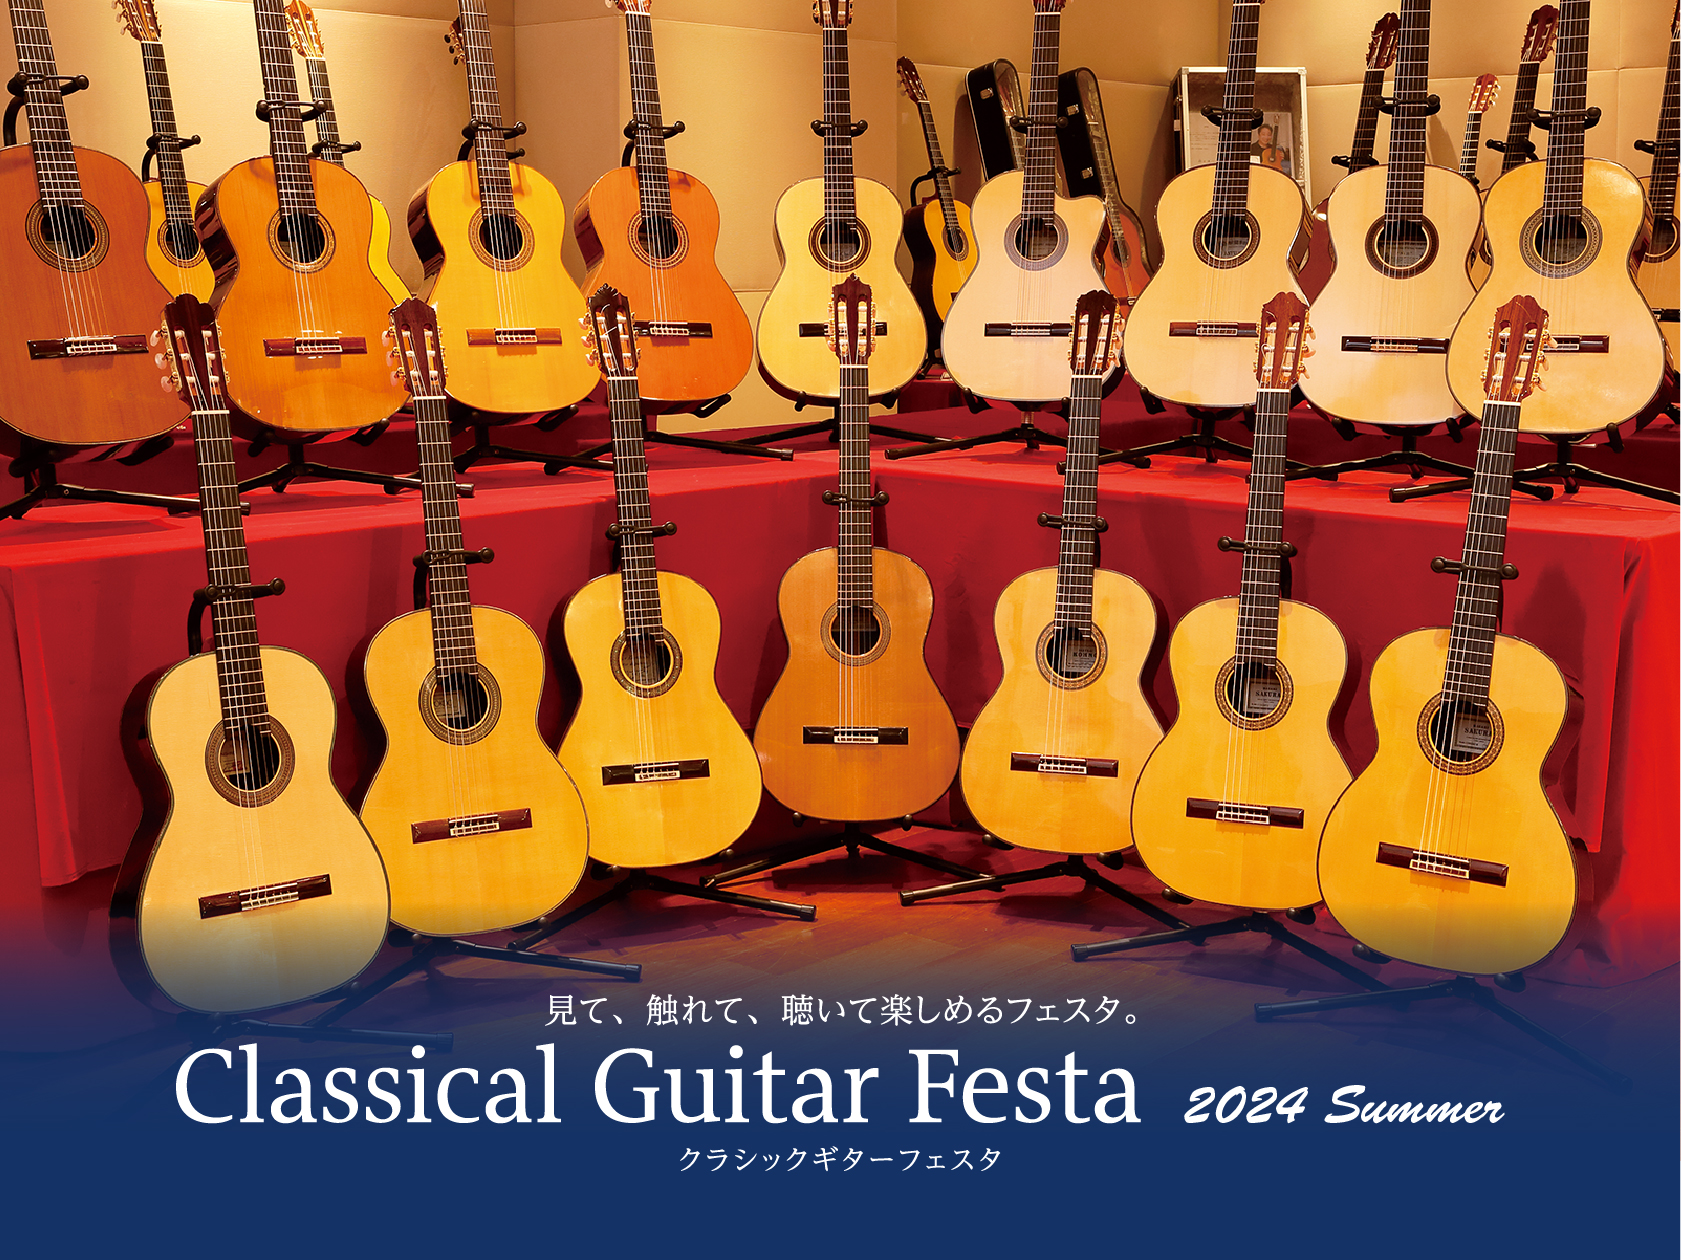 CONTENTS初心者から経験者まで楽しめる、クラシックギター展示会開催概要展示予定クラシックギター開催イベント　Coming soon...お申込み・お問い合わせ初心者から経験者まで楽しめる、クラシックギター展示会 国内外の有名ブランドが集まるクラシックギターフェスタが今年も開催されます。 全ての […]